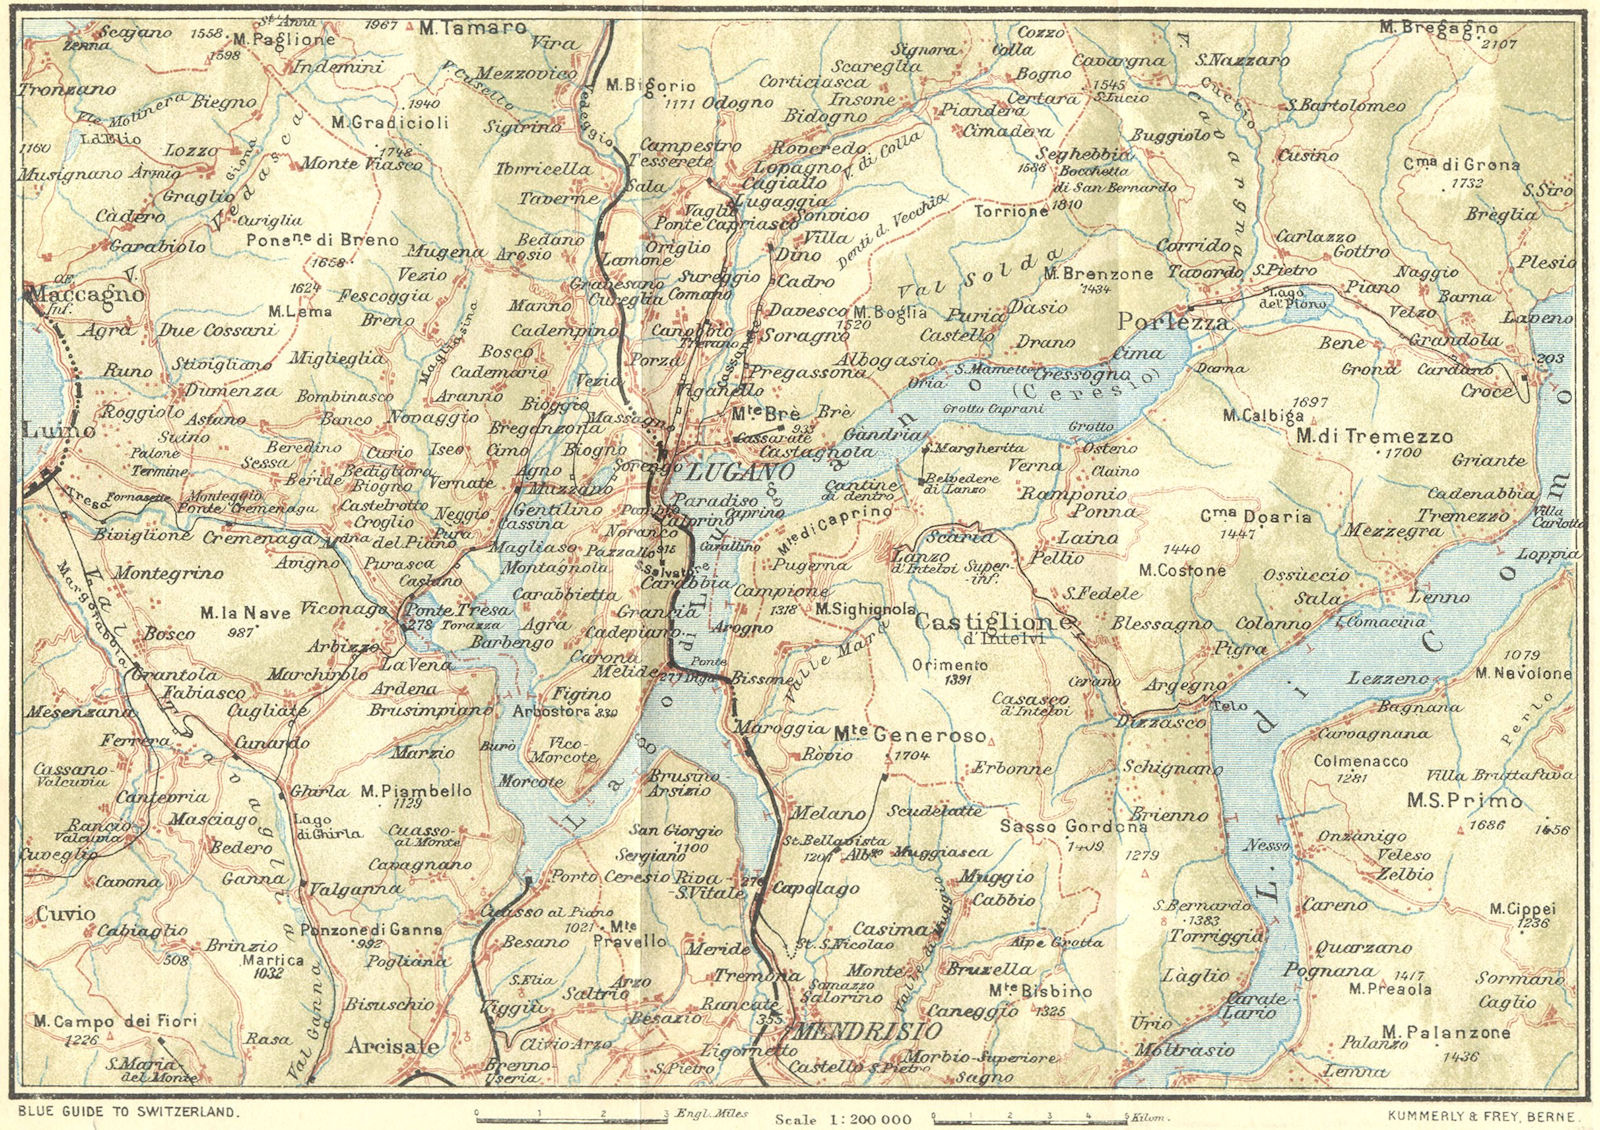 SWITZERLAND. Lake of Lugano 1923 old antique vintage map plan chart